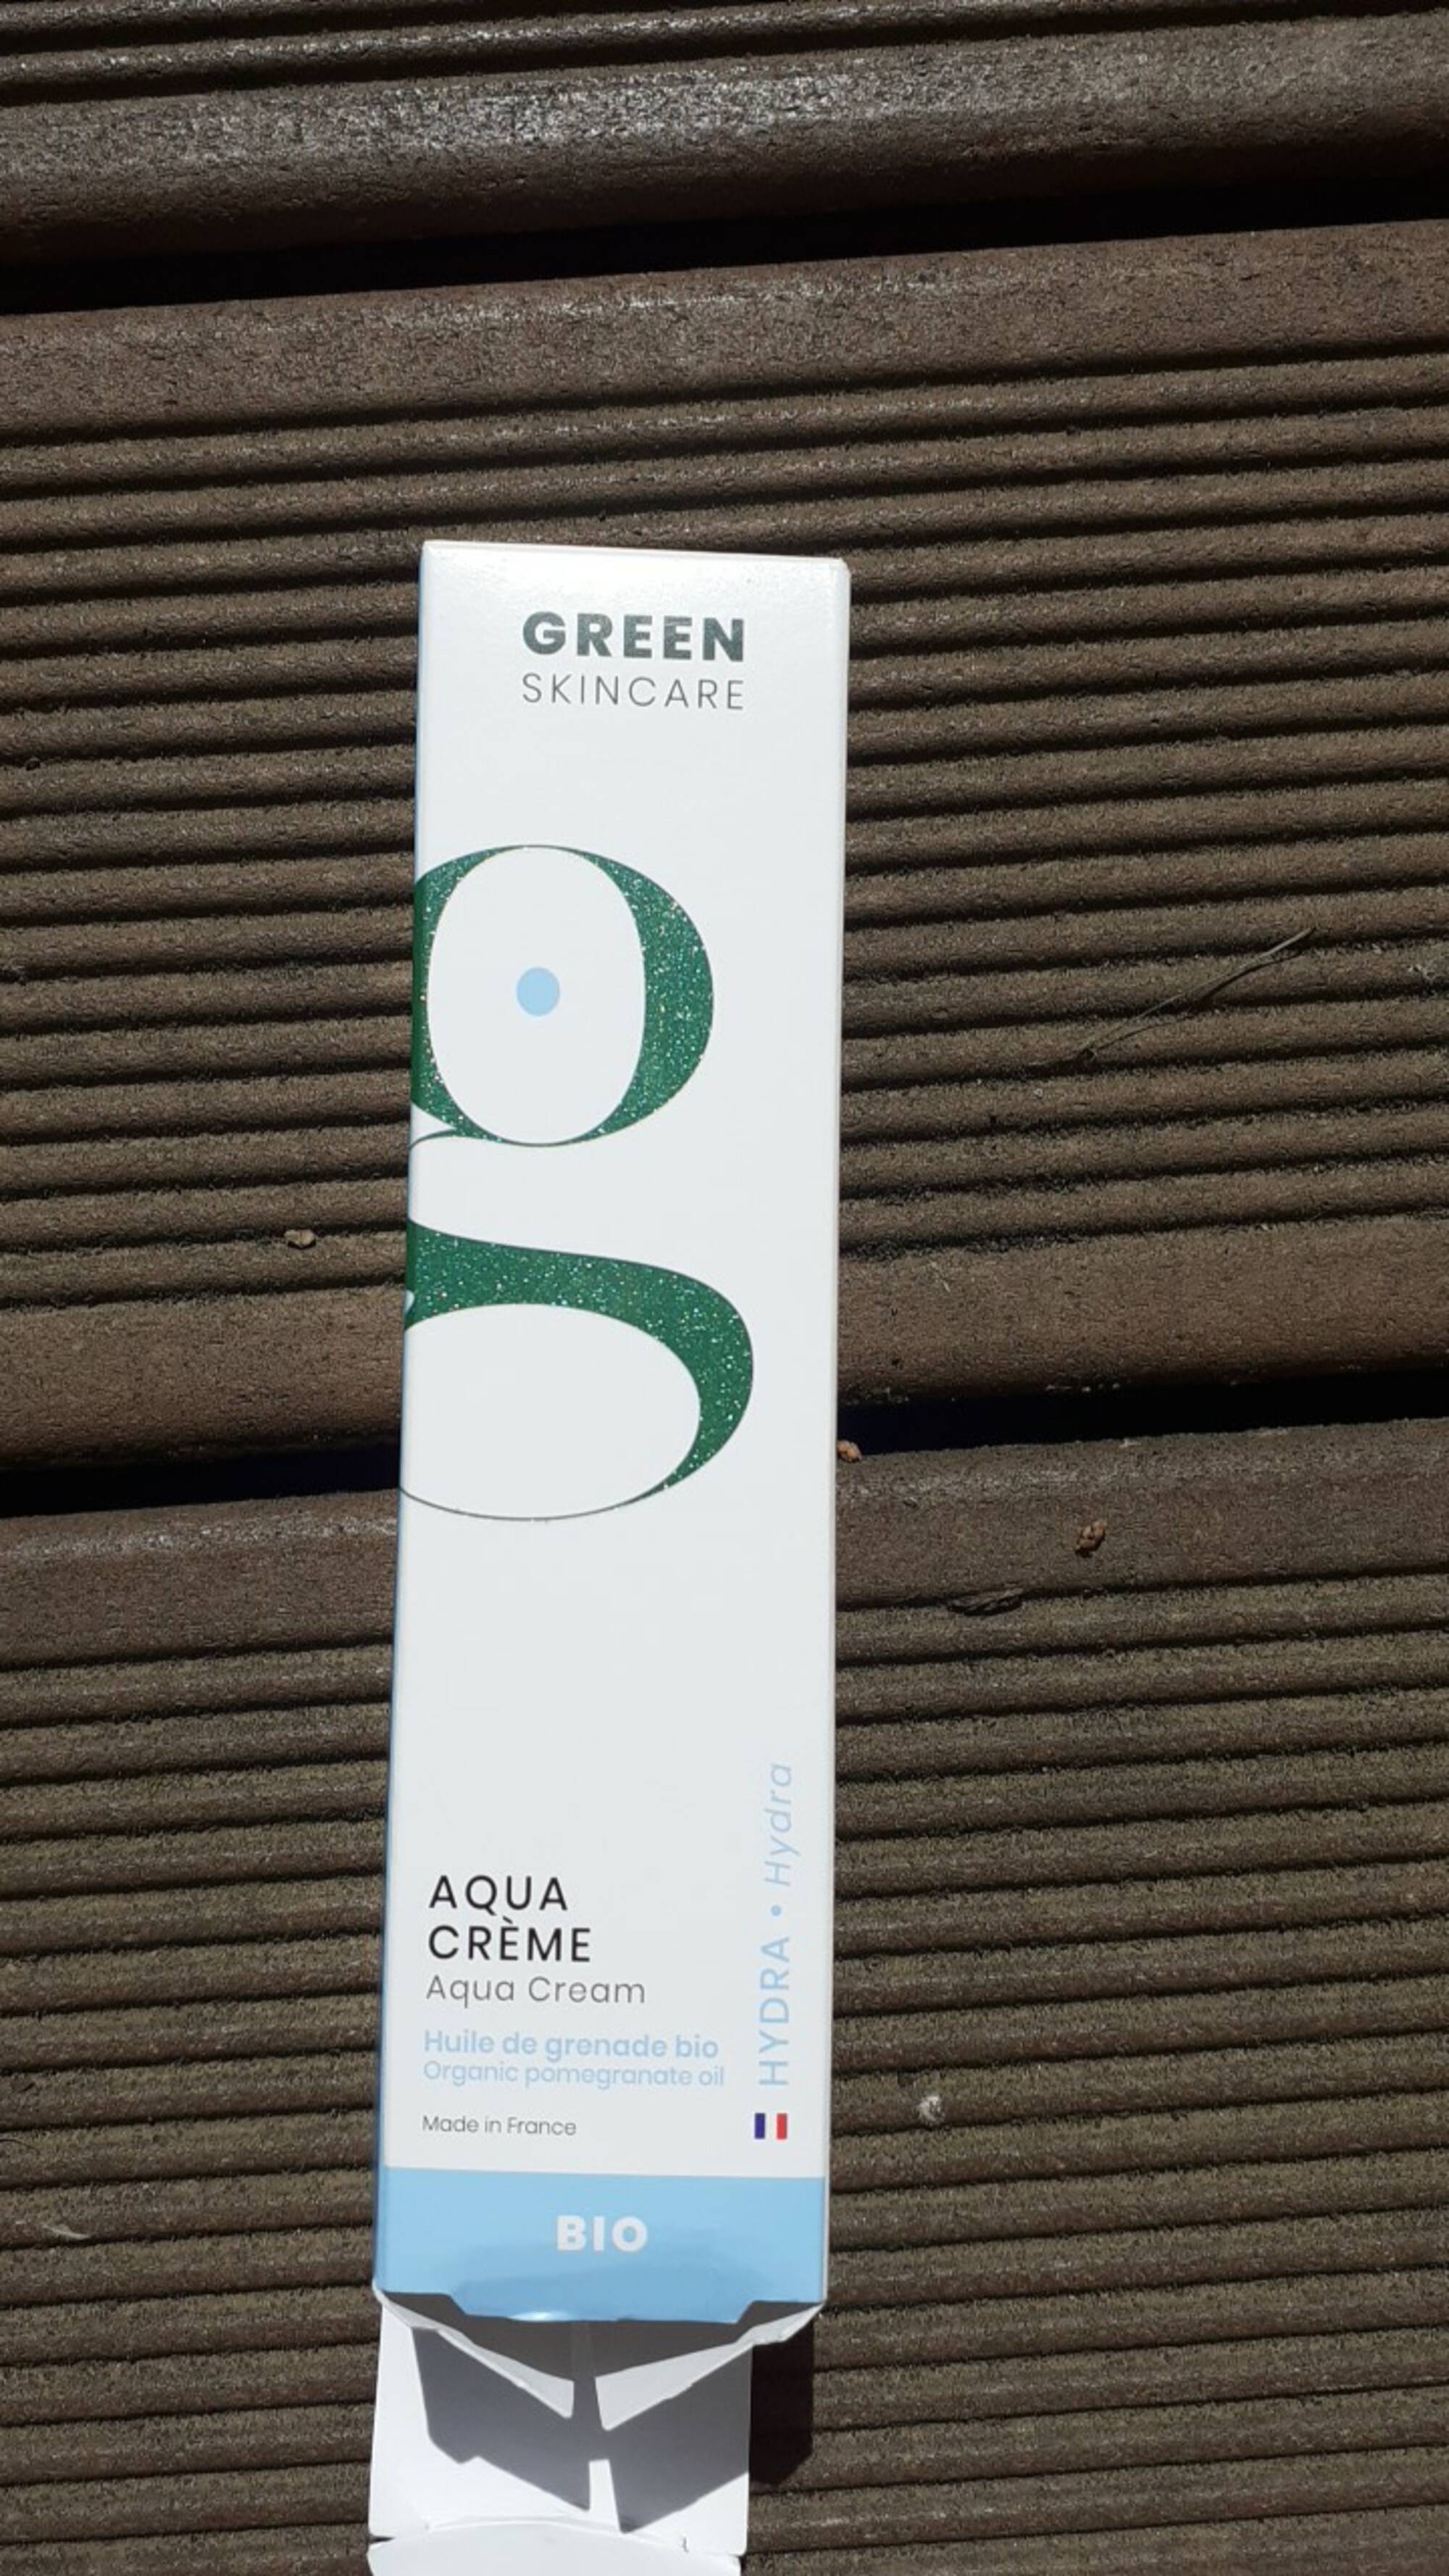 GREEN SKINCARE - Aqua crème - Huile de grenade bio